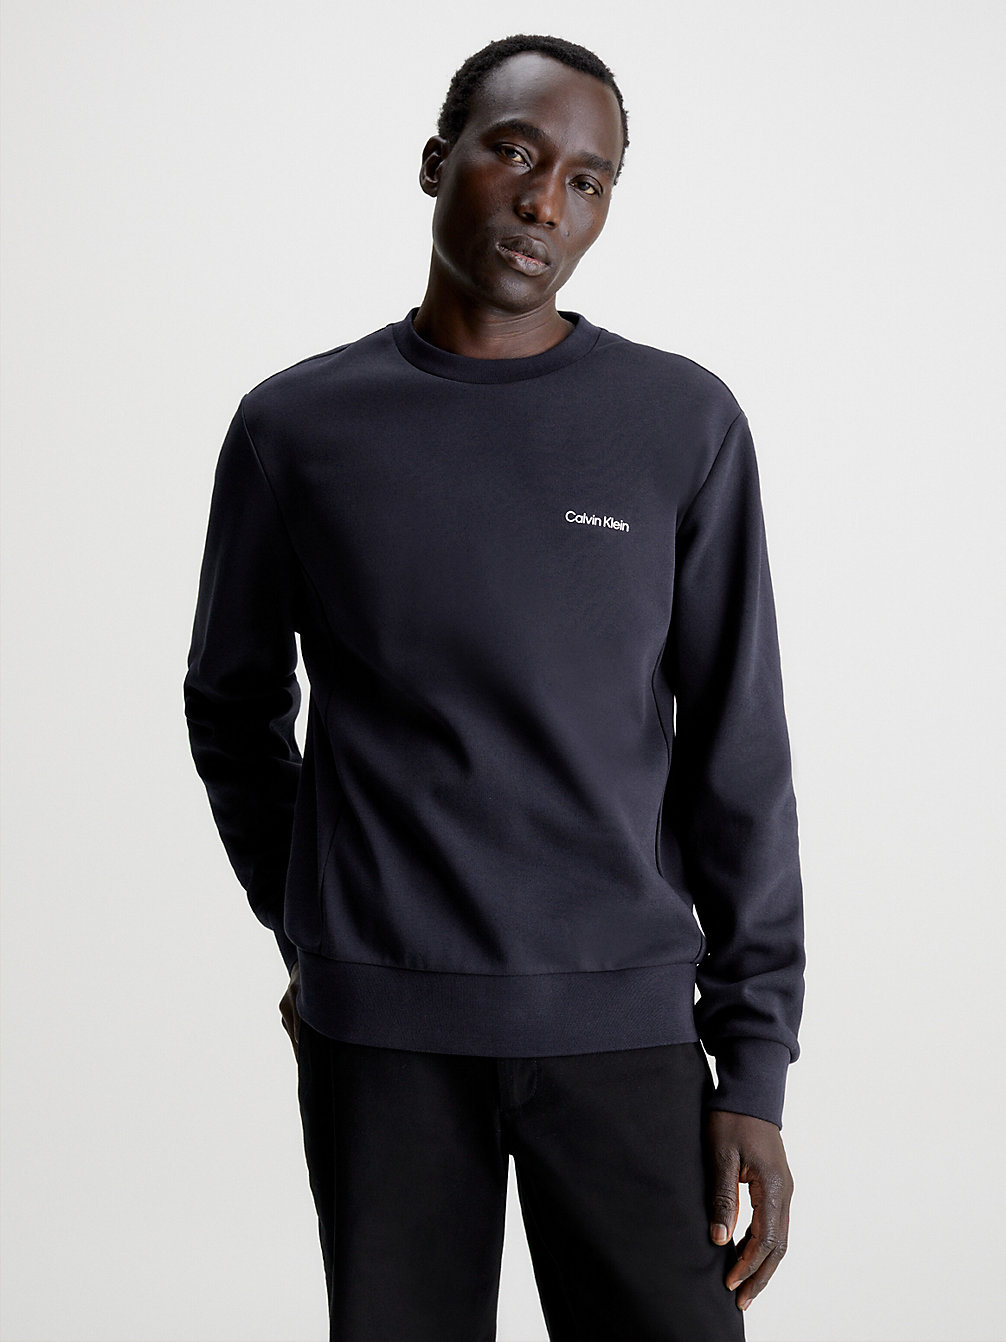 NIGHT SKY > Sweatshirt Aus Recyceltem Polyester > undefined men - Calvin Klein